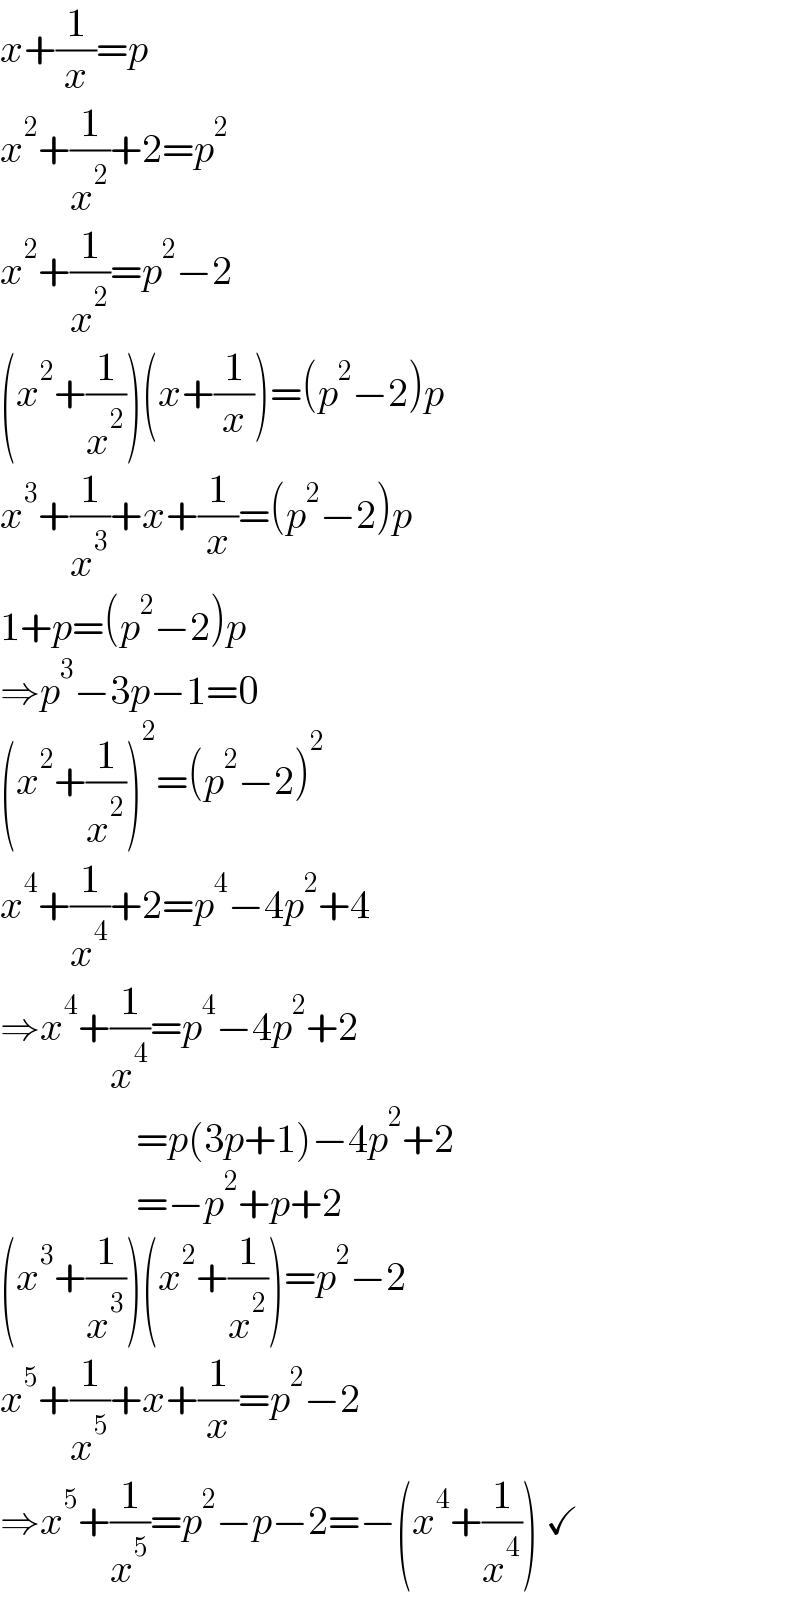 x+(1/x)=p  x^2 +(1/x^2 )+2=p^2   x^2 +(1/x^2 )=p^2 −2  (x^2 +(1/x^2 ))(x+(1/x))=(p^2 −2)p  x^3 +(1/x^3 )+x+(1/x)=(p^2 −2)p  1+p=(p^2 −2)p  ⇒p^3 −3p−1=0  (x^2 +(1/x^2 ))^2 =(p^2 −2)^2   x^4 +(1/x^4 )+2=p^4 −4p^2 +4  ⇒x^4 +(1/x^4 )=p^4 −4p^2 +2                   =p(3p+1)−4p^2 +2                   =−p^2 +p+2  (x^3 +(1/x^3 ))(x^2 +(1/x^2 ))=p^2 −2  x^5 +(1/x^5 )+x+(1/x)=p^2 −2  ⇒x^5 +(1/x^5 )=p^2 −p−2=−(x^4 +(1/x^4 )) ✓  